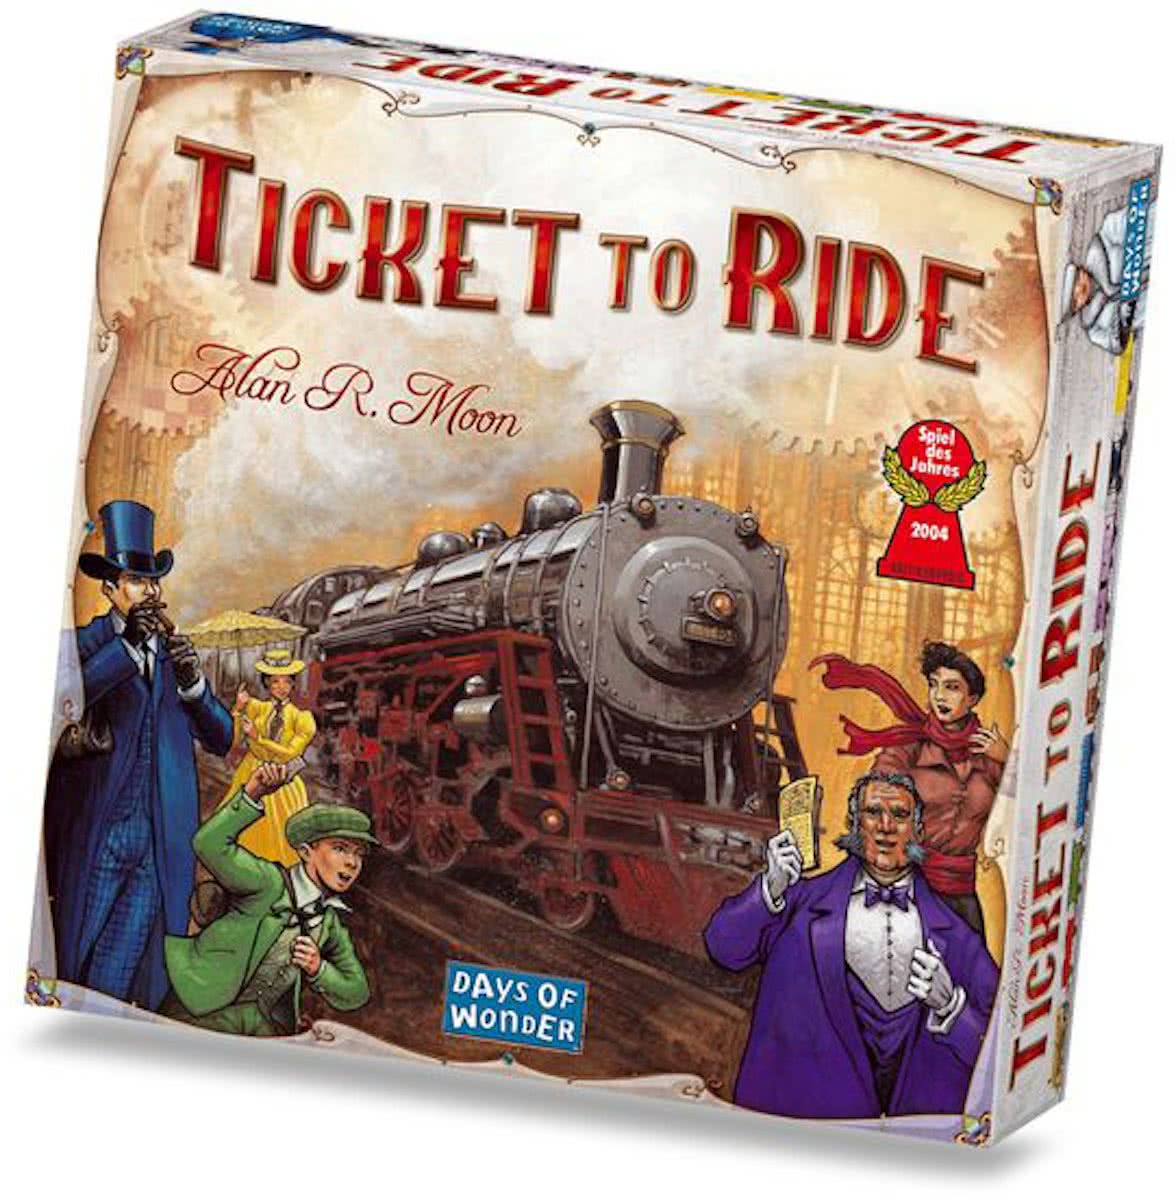 Ticket to Ride description reviews